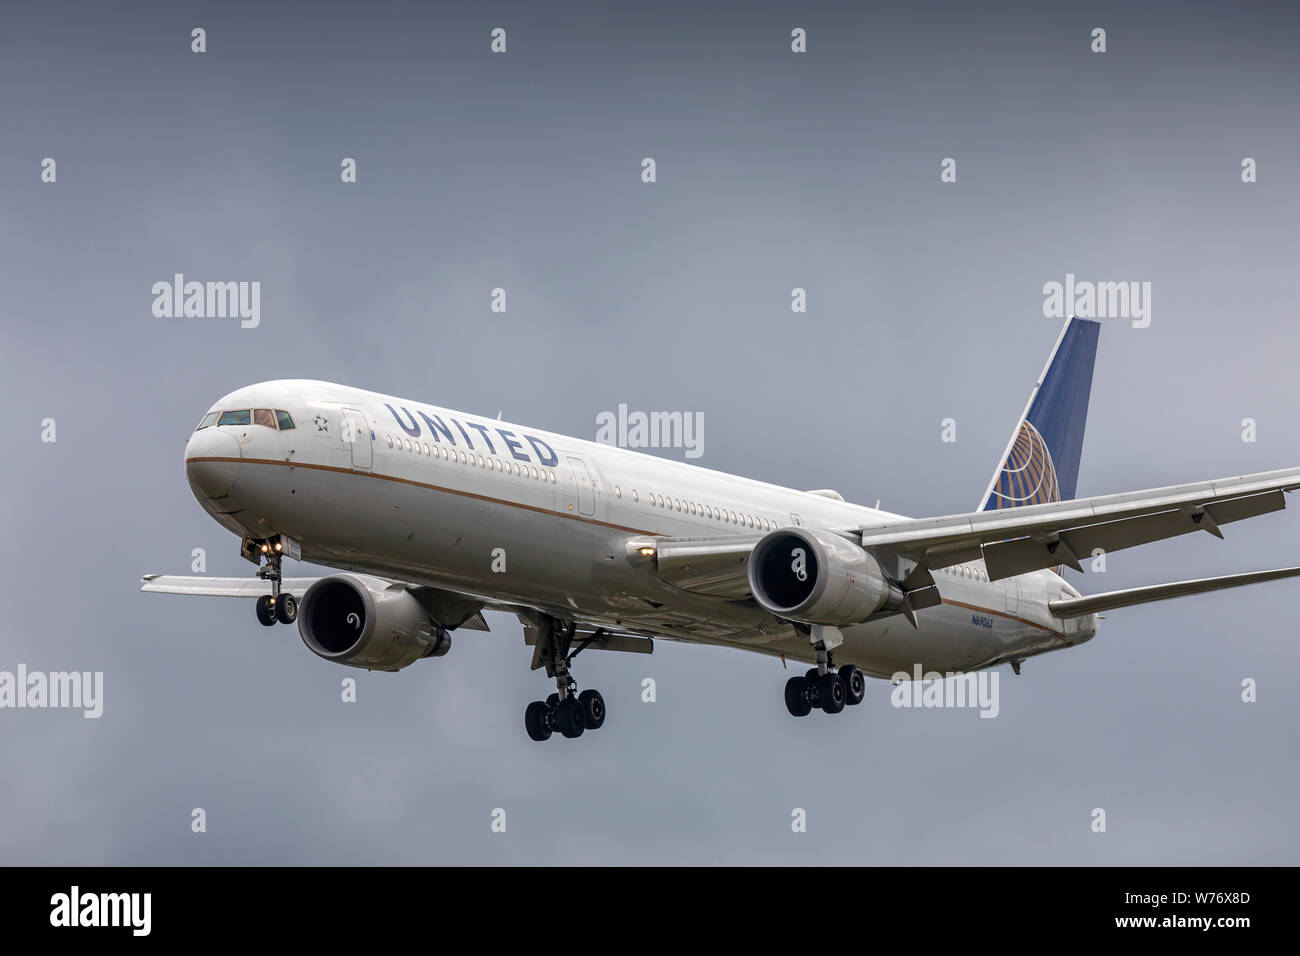 United Airlines Boeing 767 immatriculé N69063, à l'atterrissage le 2 août 2019 à l'aéroport d'Heathrow, Middlesex, Royaume-Uni Banque D'Images